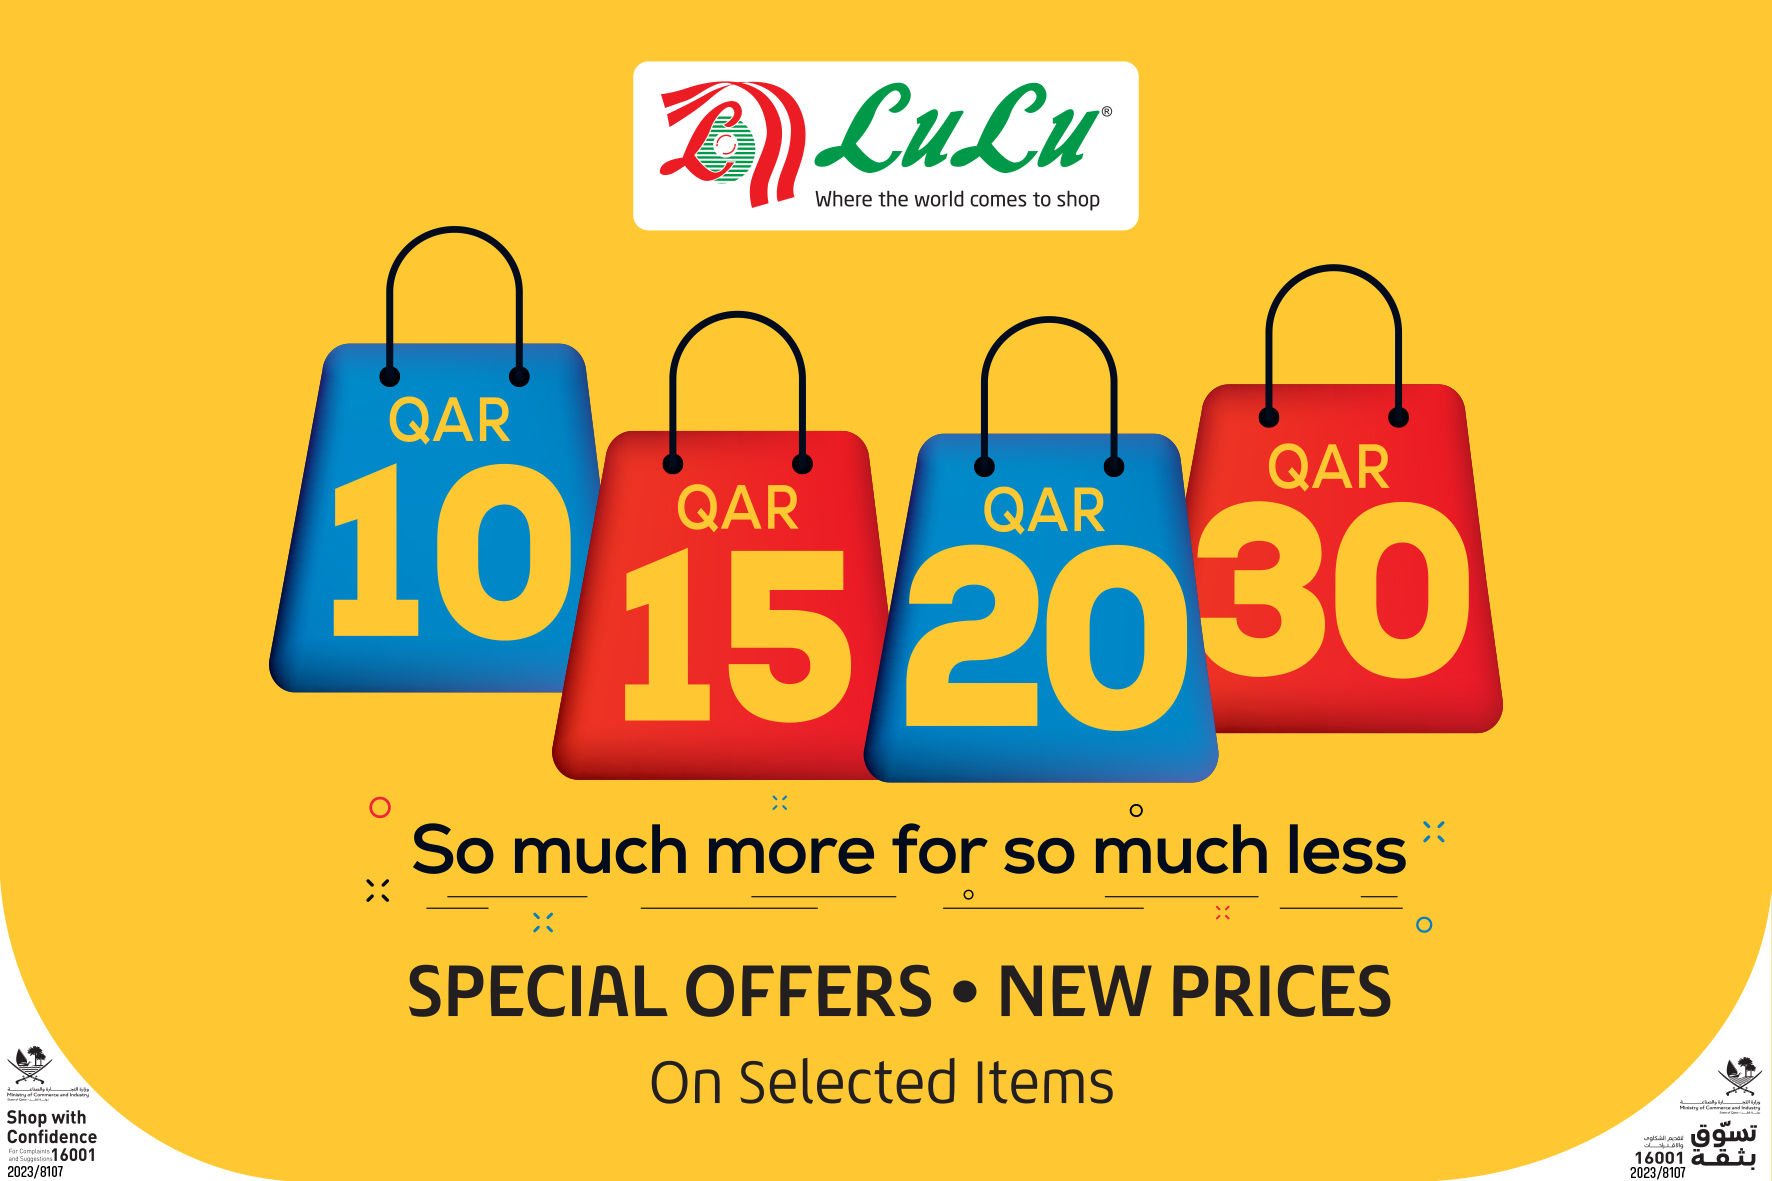 Lulu Hypermarket Qatar brings back much-awaited QR 10/15/20/30 promotion